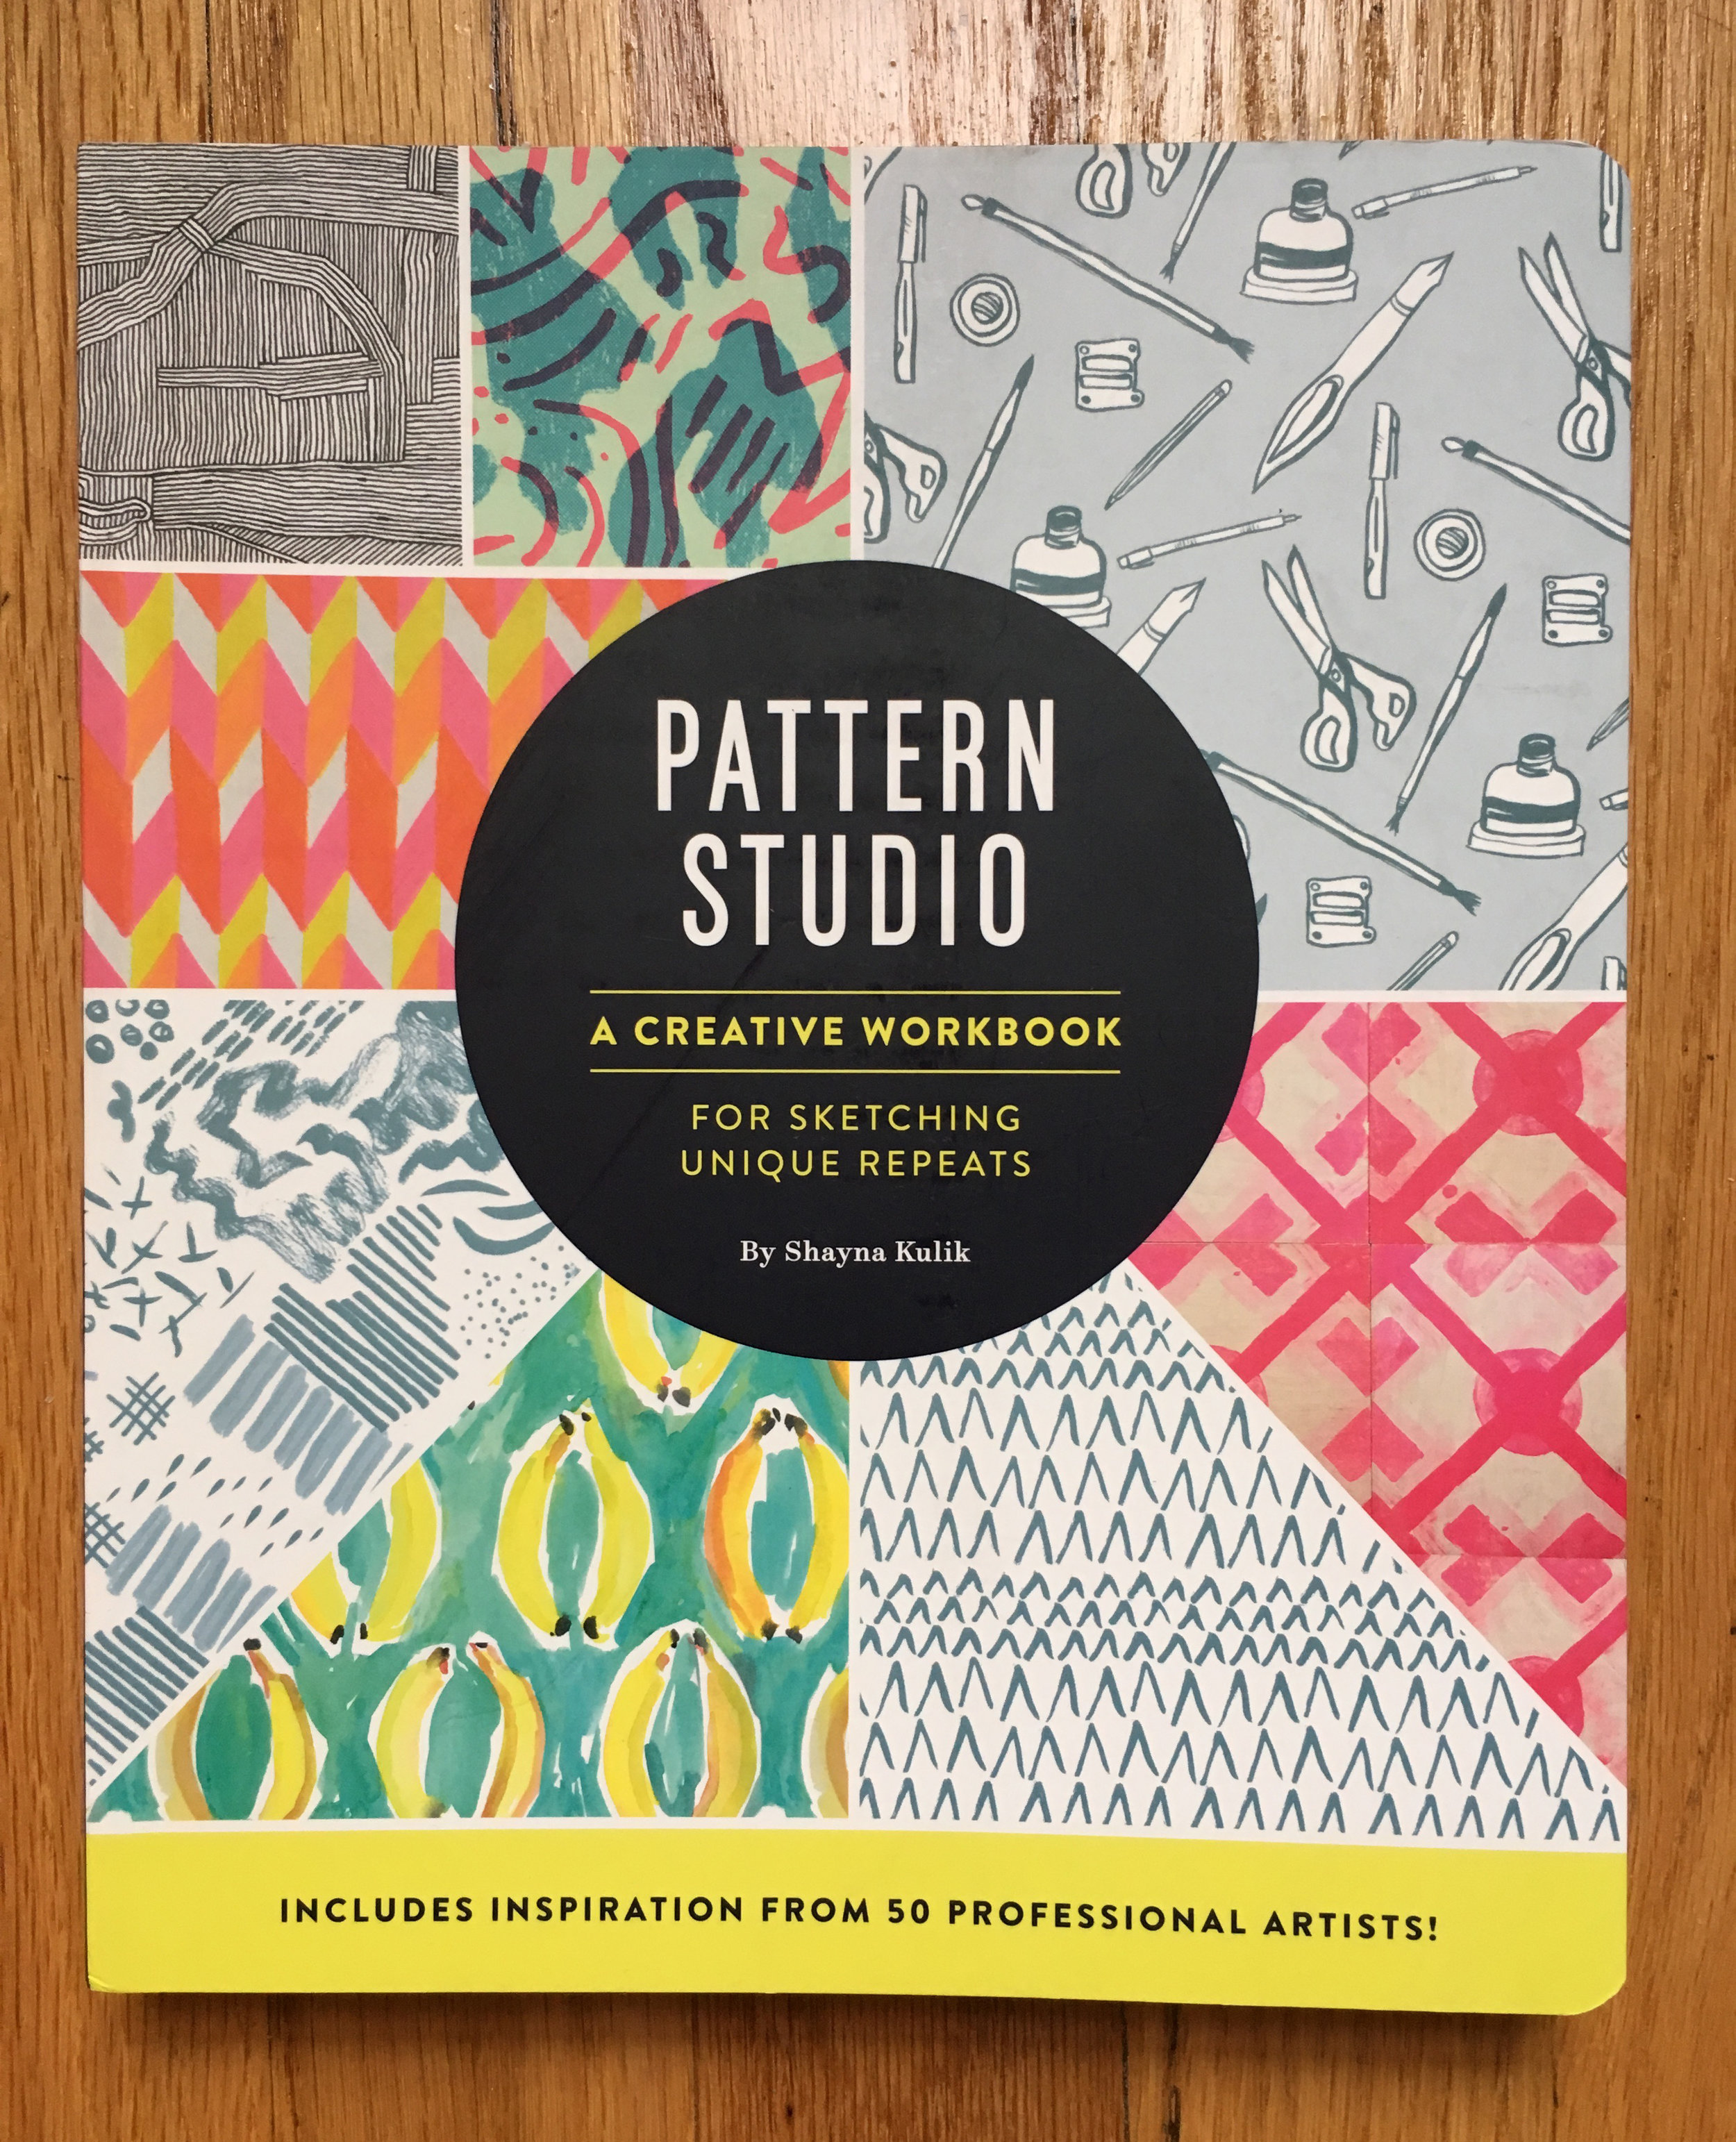 "Pattern Studio" by Shayna Kulik - Chronicle Books 2016